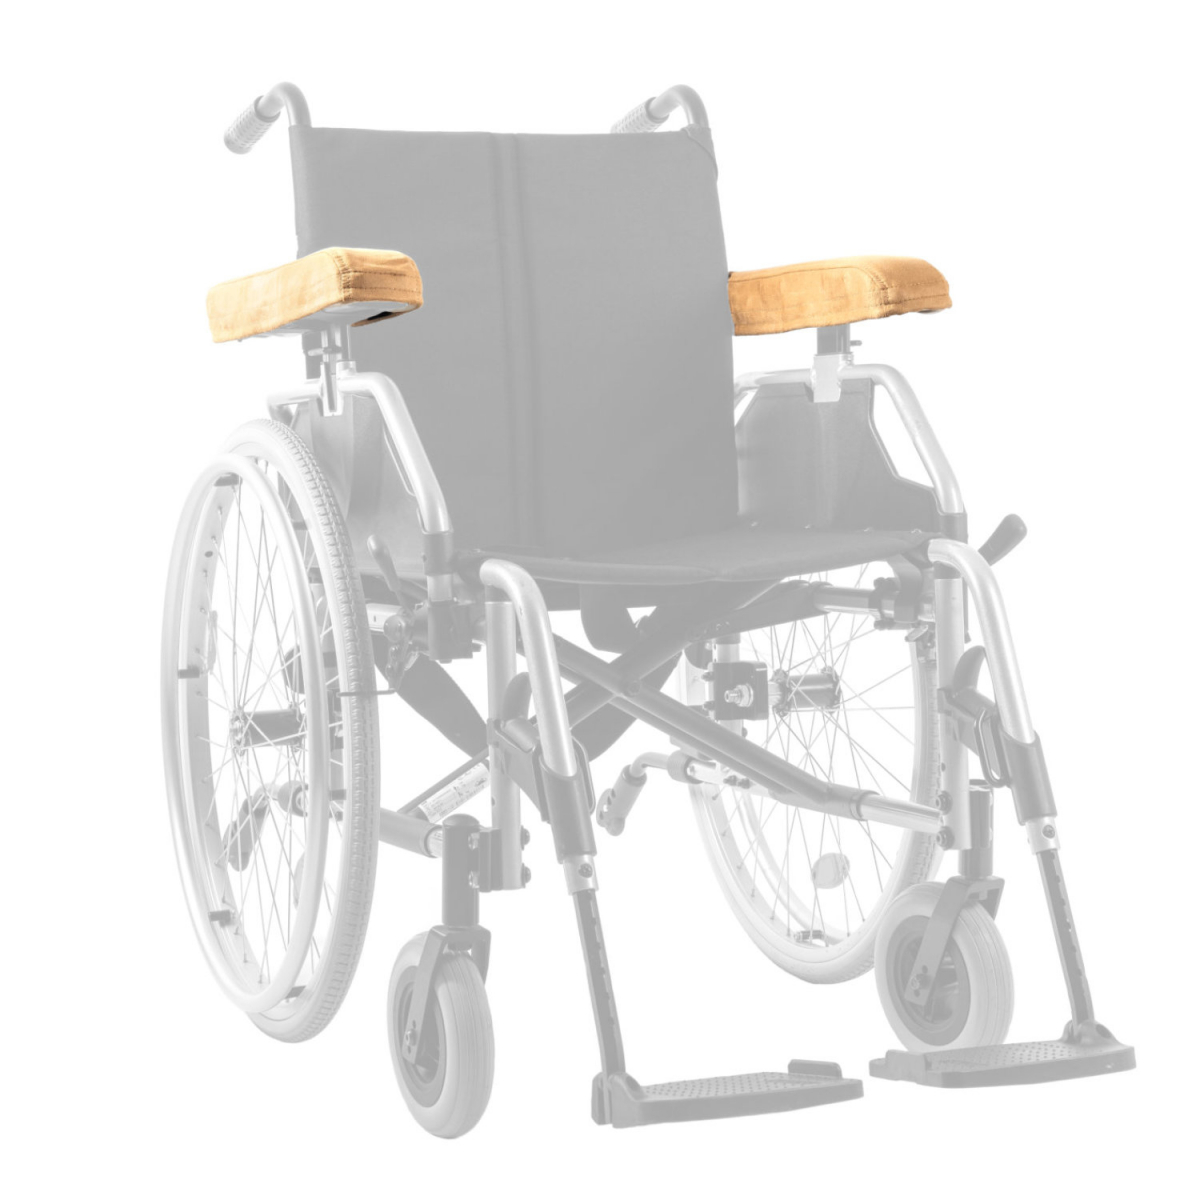 Armlehne Kissen Polster,1 Paar Rollstuhl Armlehnen Polster mit